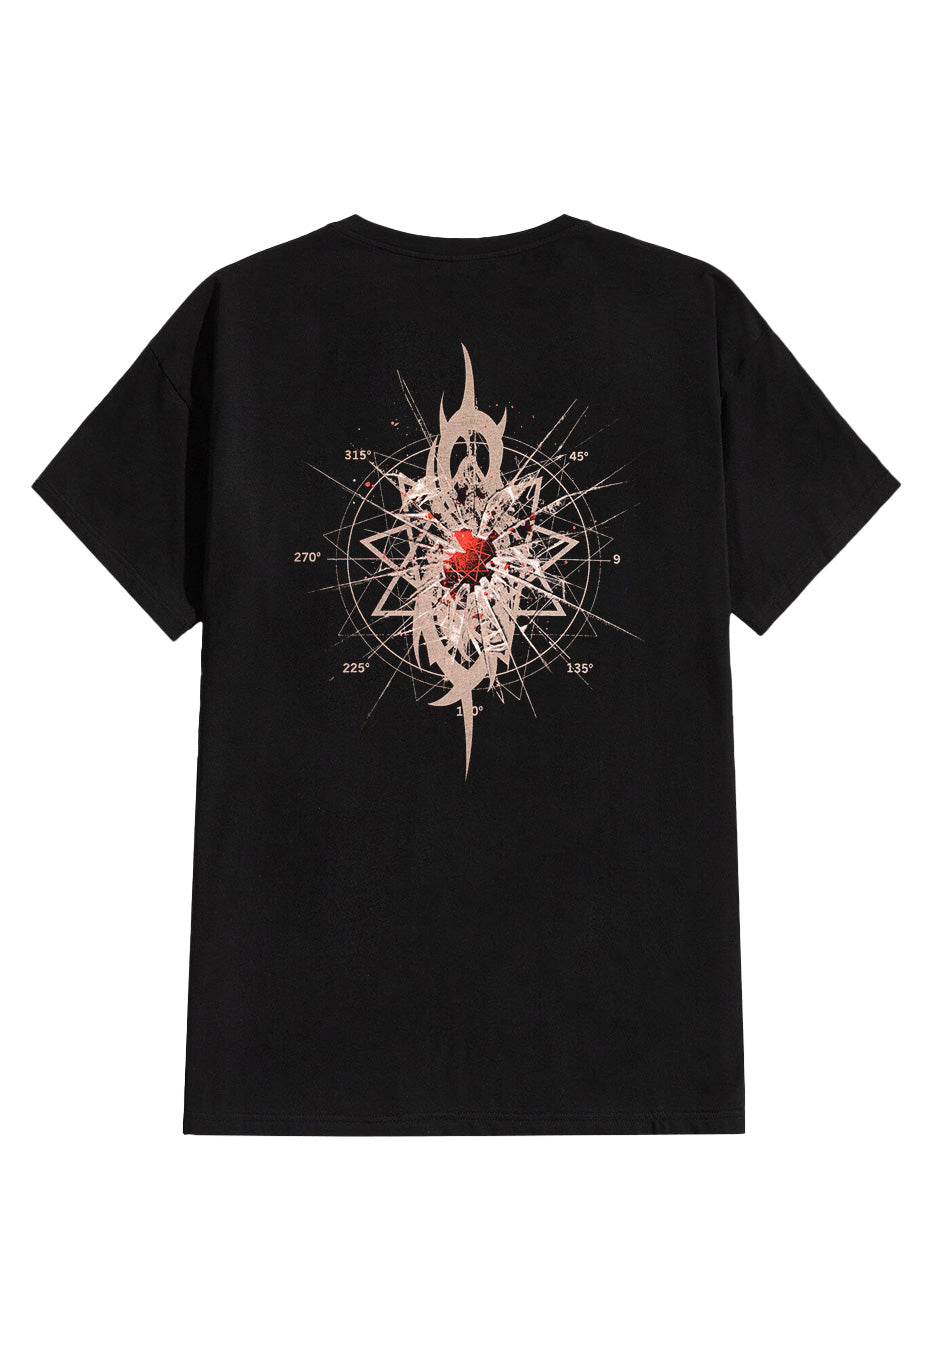 Slipknot - Shattered - T-Shirt